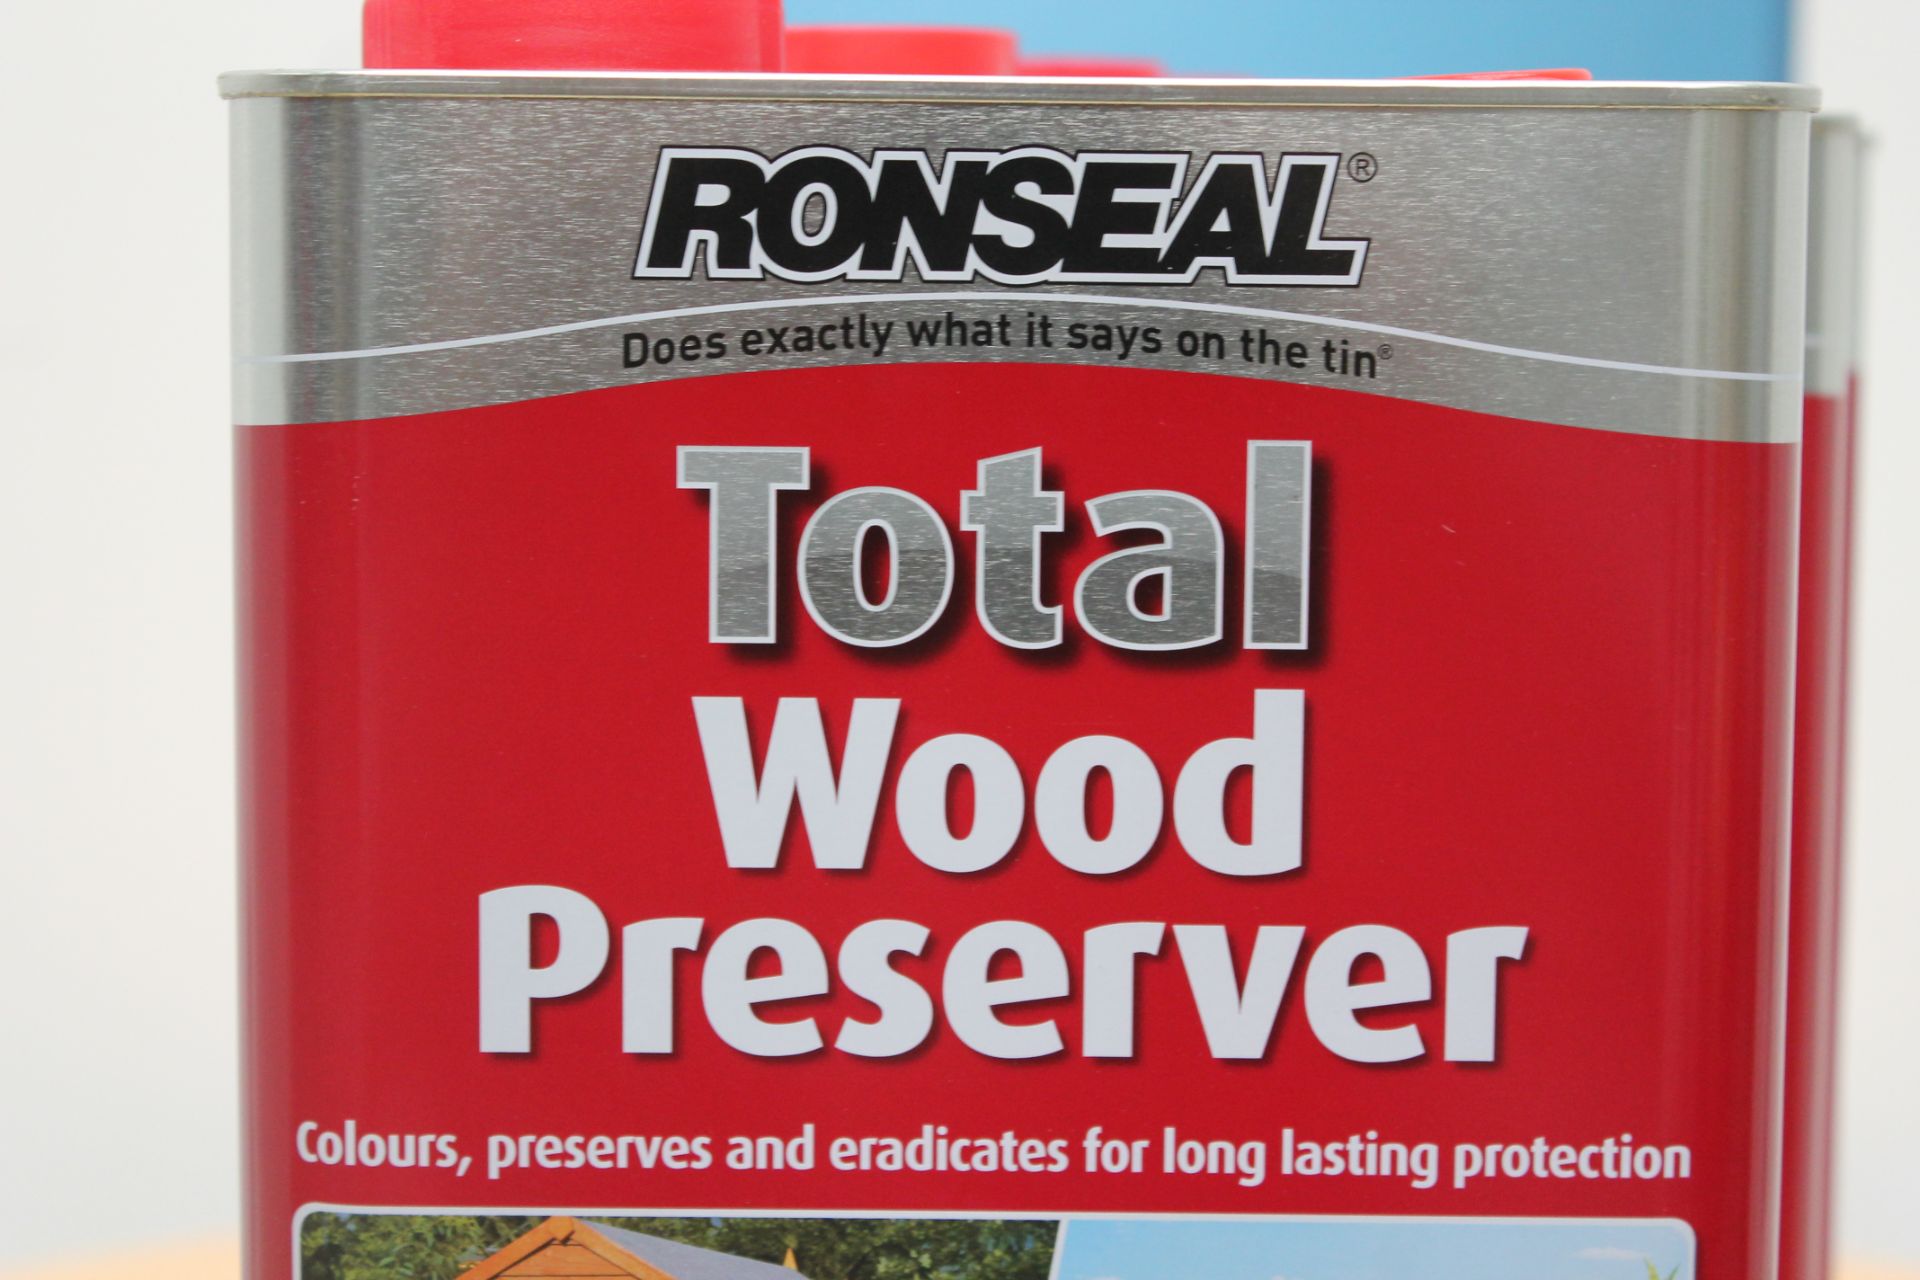 5 x 5L Ronseal Total Wood Preserver (Dark Brown) - Image 2 of 2